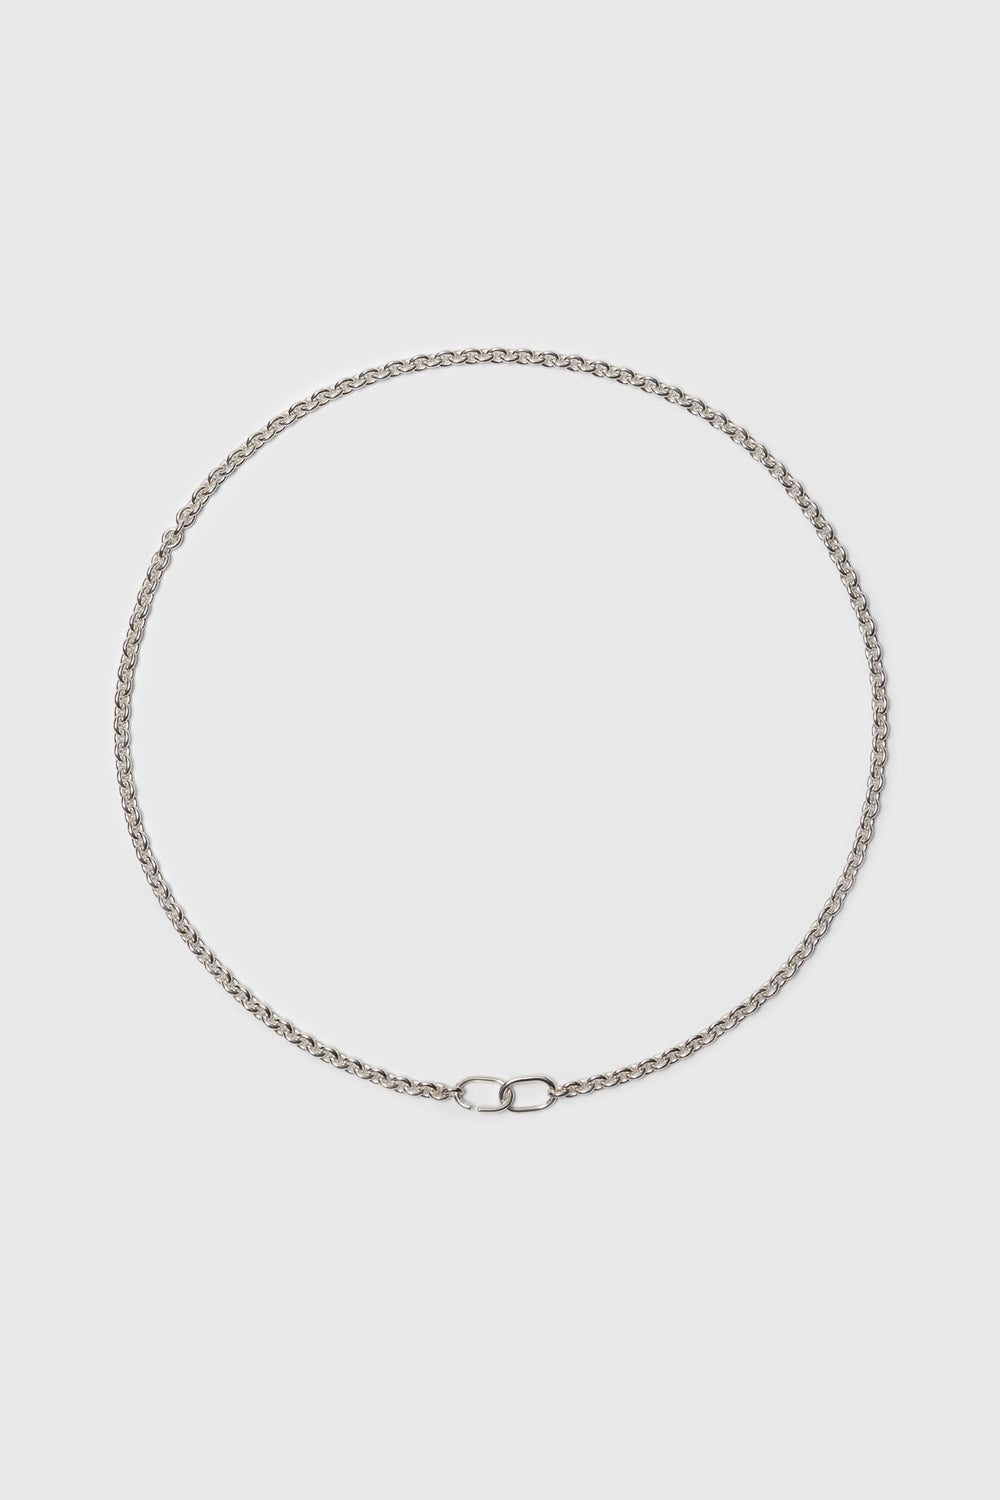 Long link chain necklace. Fine jewelry handmade in Berlin.